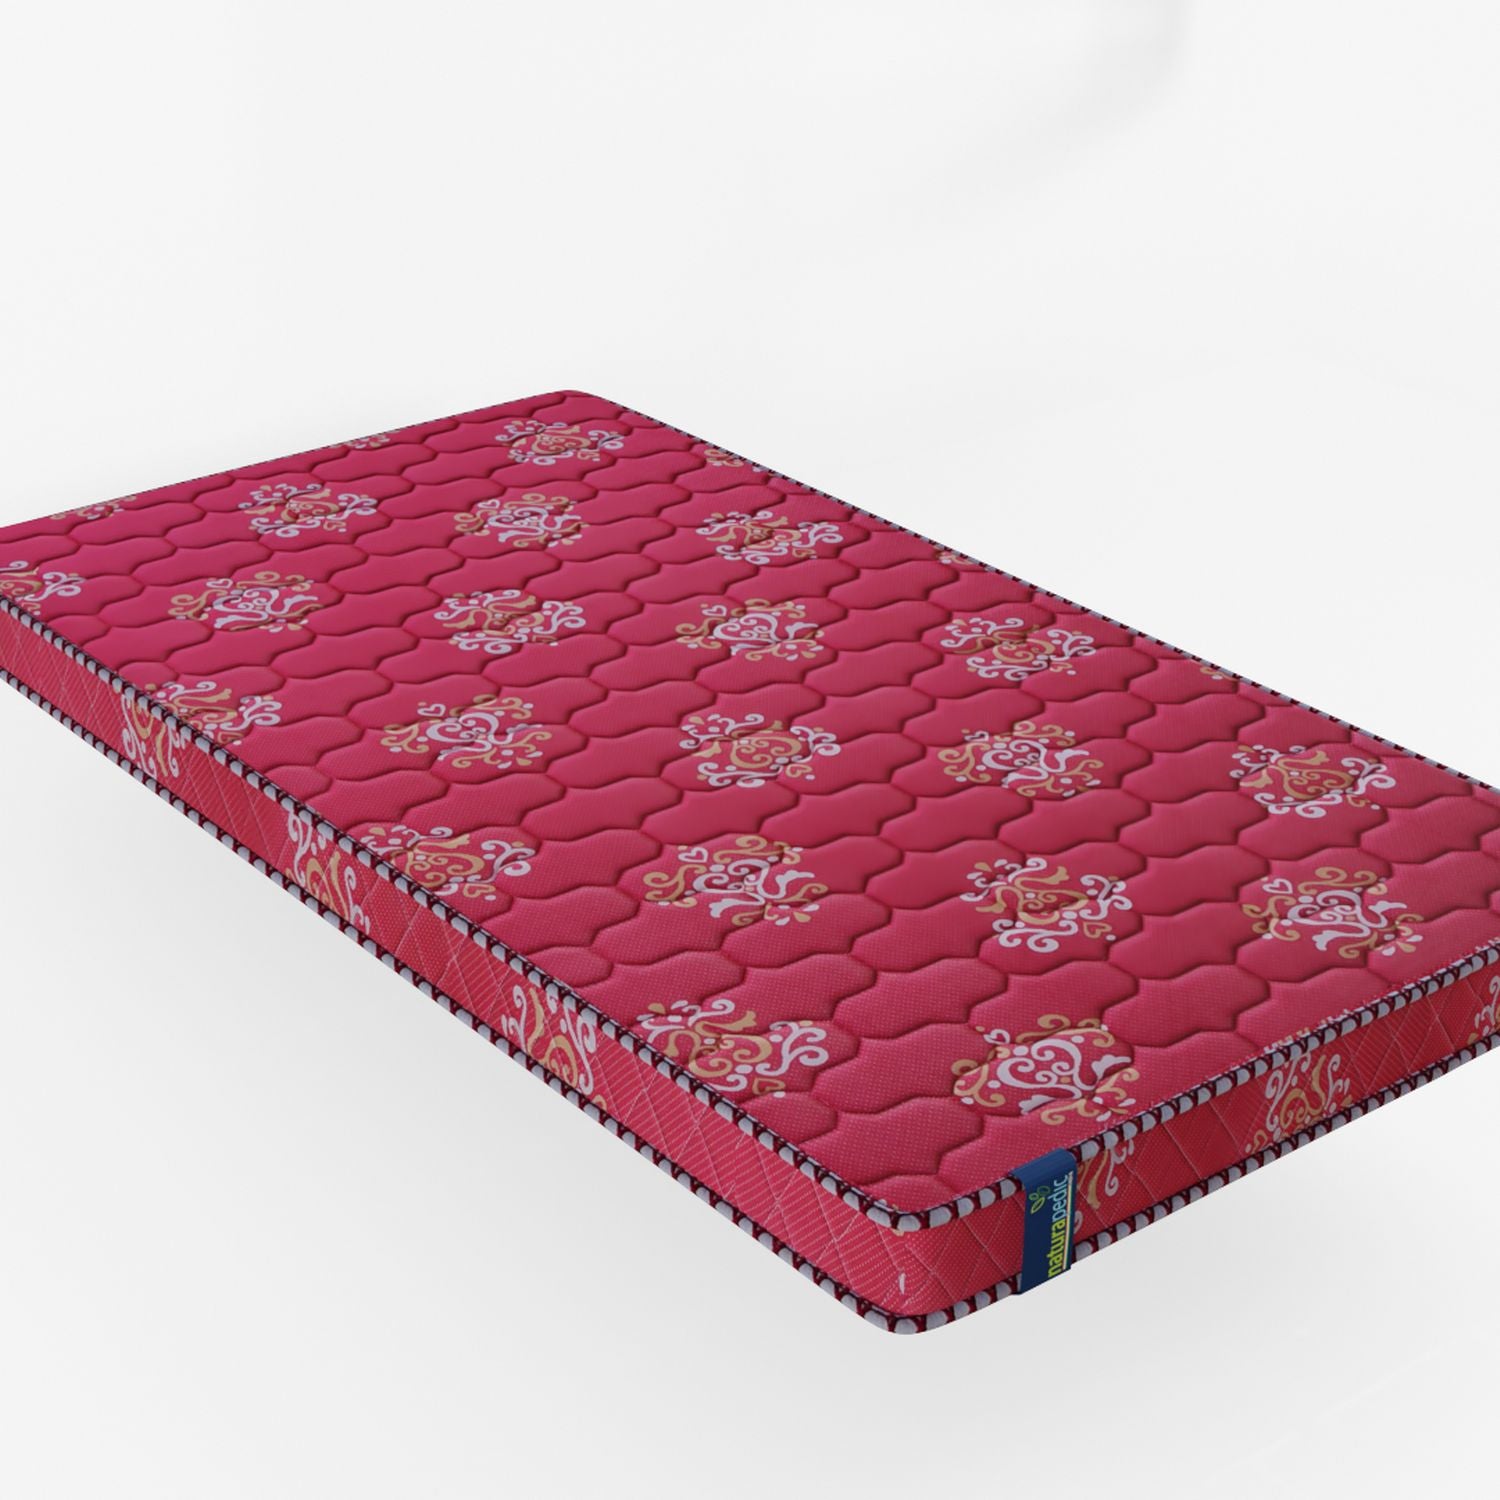 Naturapedic Orthoplus Mattress For Single Bed (Mattress Size 36"X78"X5")